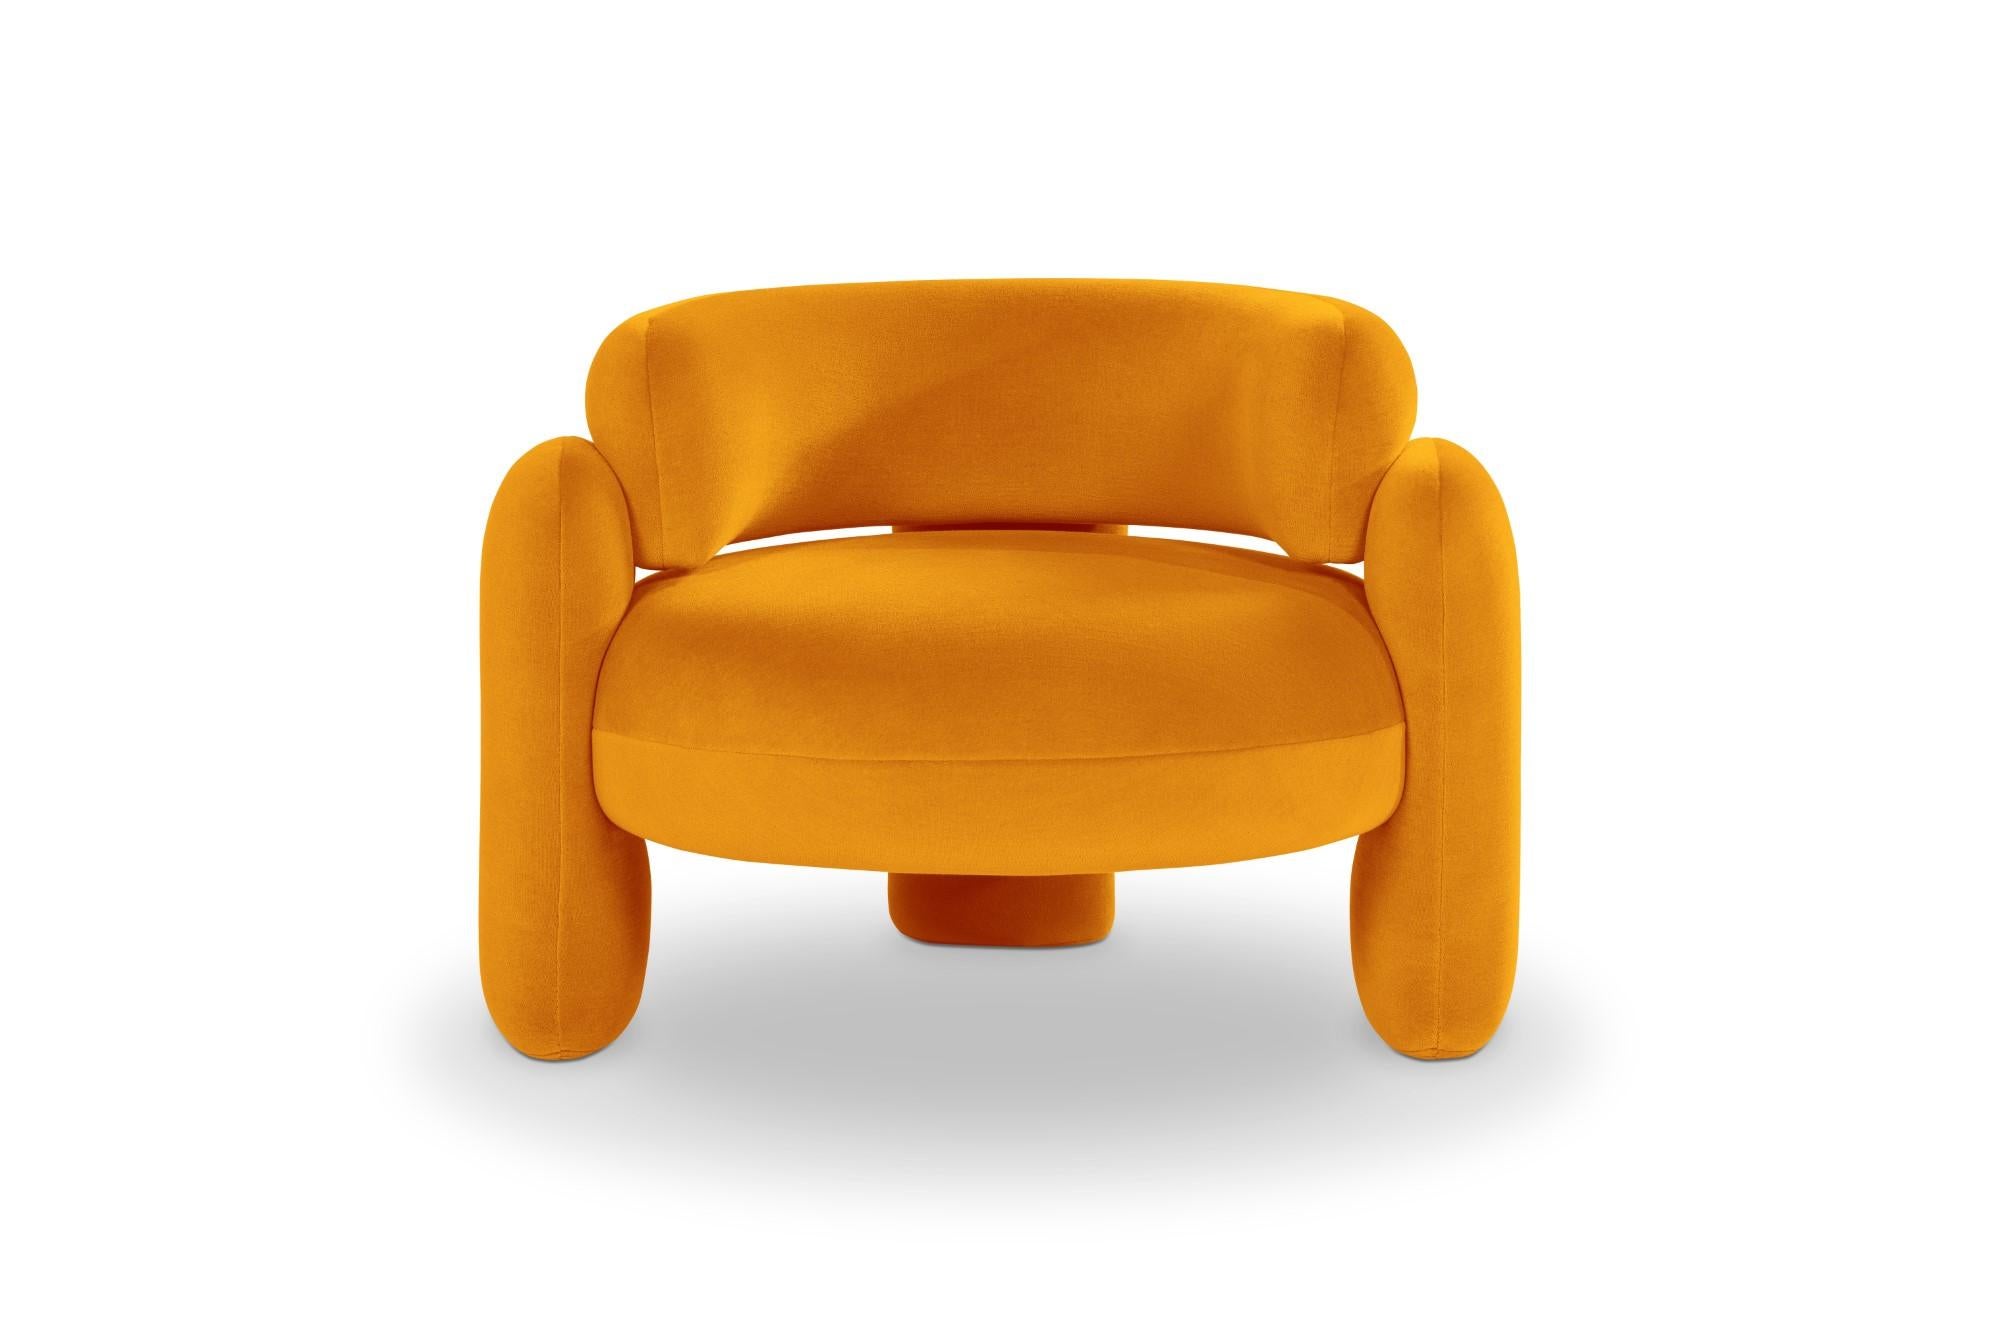 Embrace Gentle 443 Sessel von Royal Stranger 
Abmessungen: B 96 x T 85 x H 68 cm.
Es sind verschiedene Farben und Ausführungen der Polsterung erhältlich. Bitte kontaktieren Sie uns.
MATERIALIEN: Polstermöbel.

Der Embrace Armchair ist eine